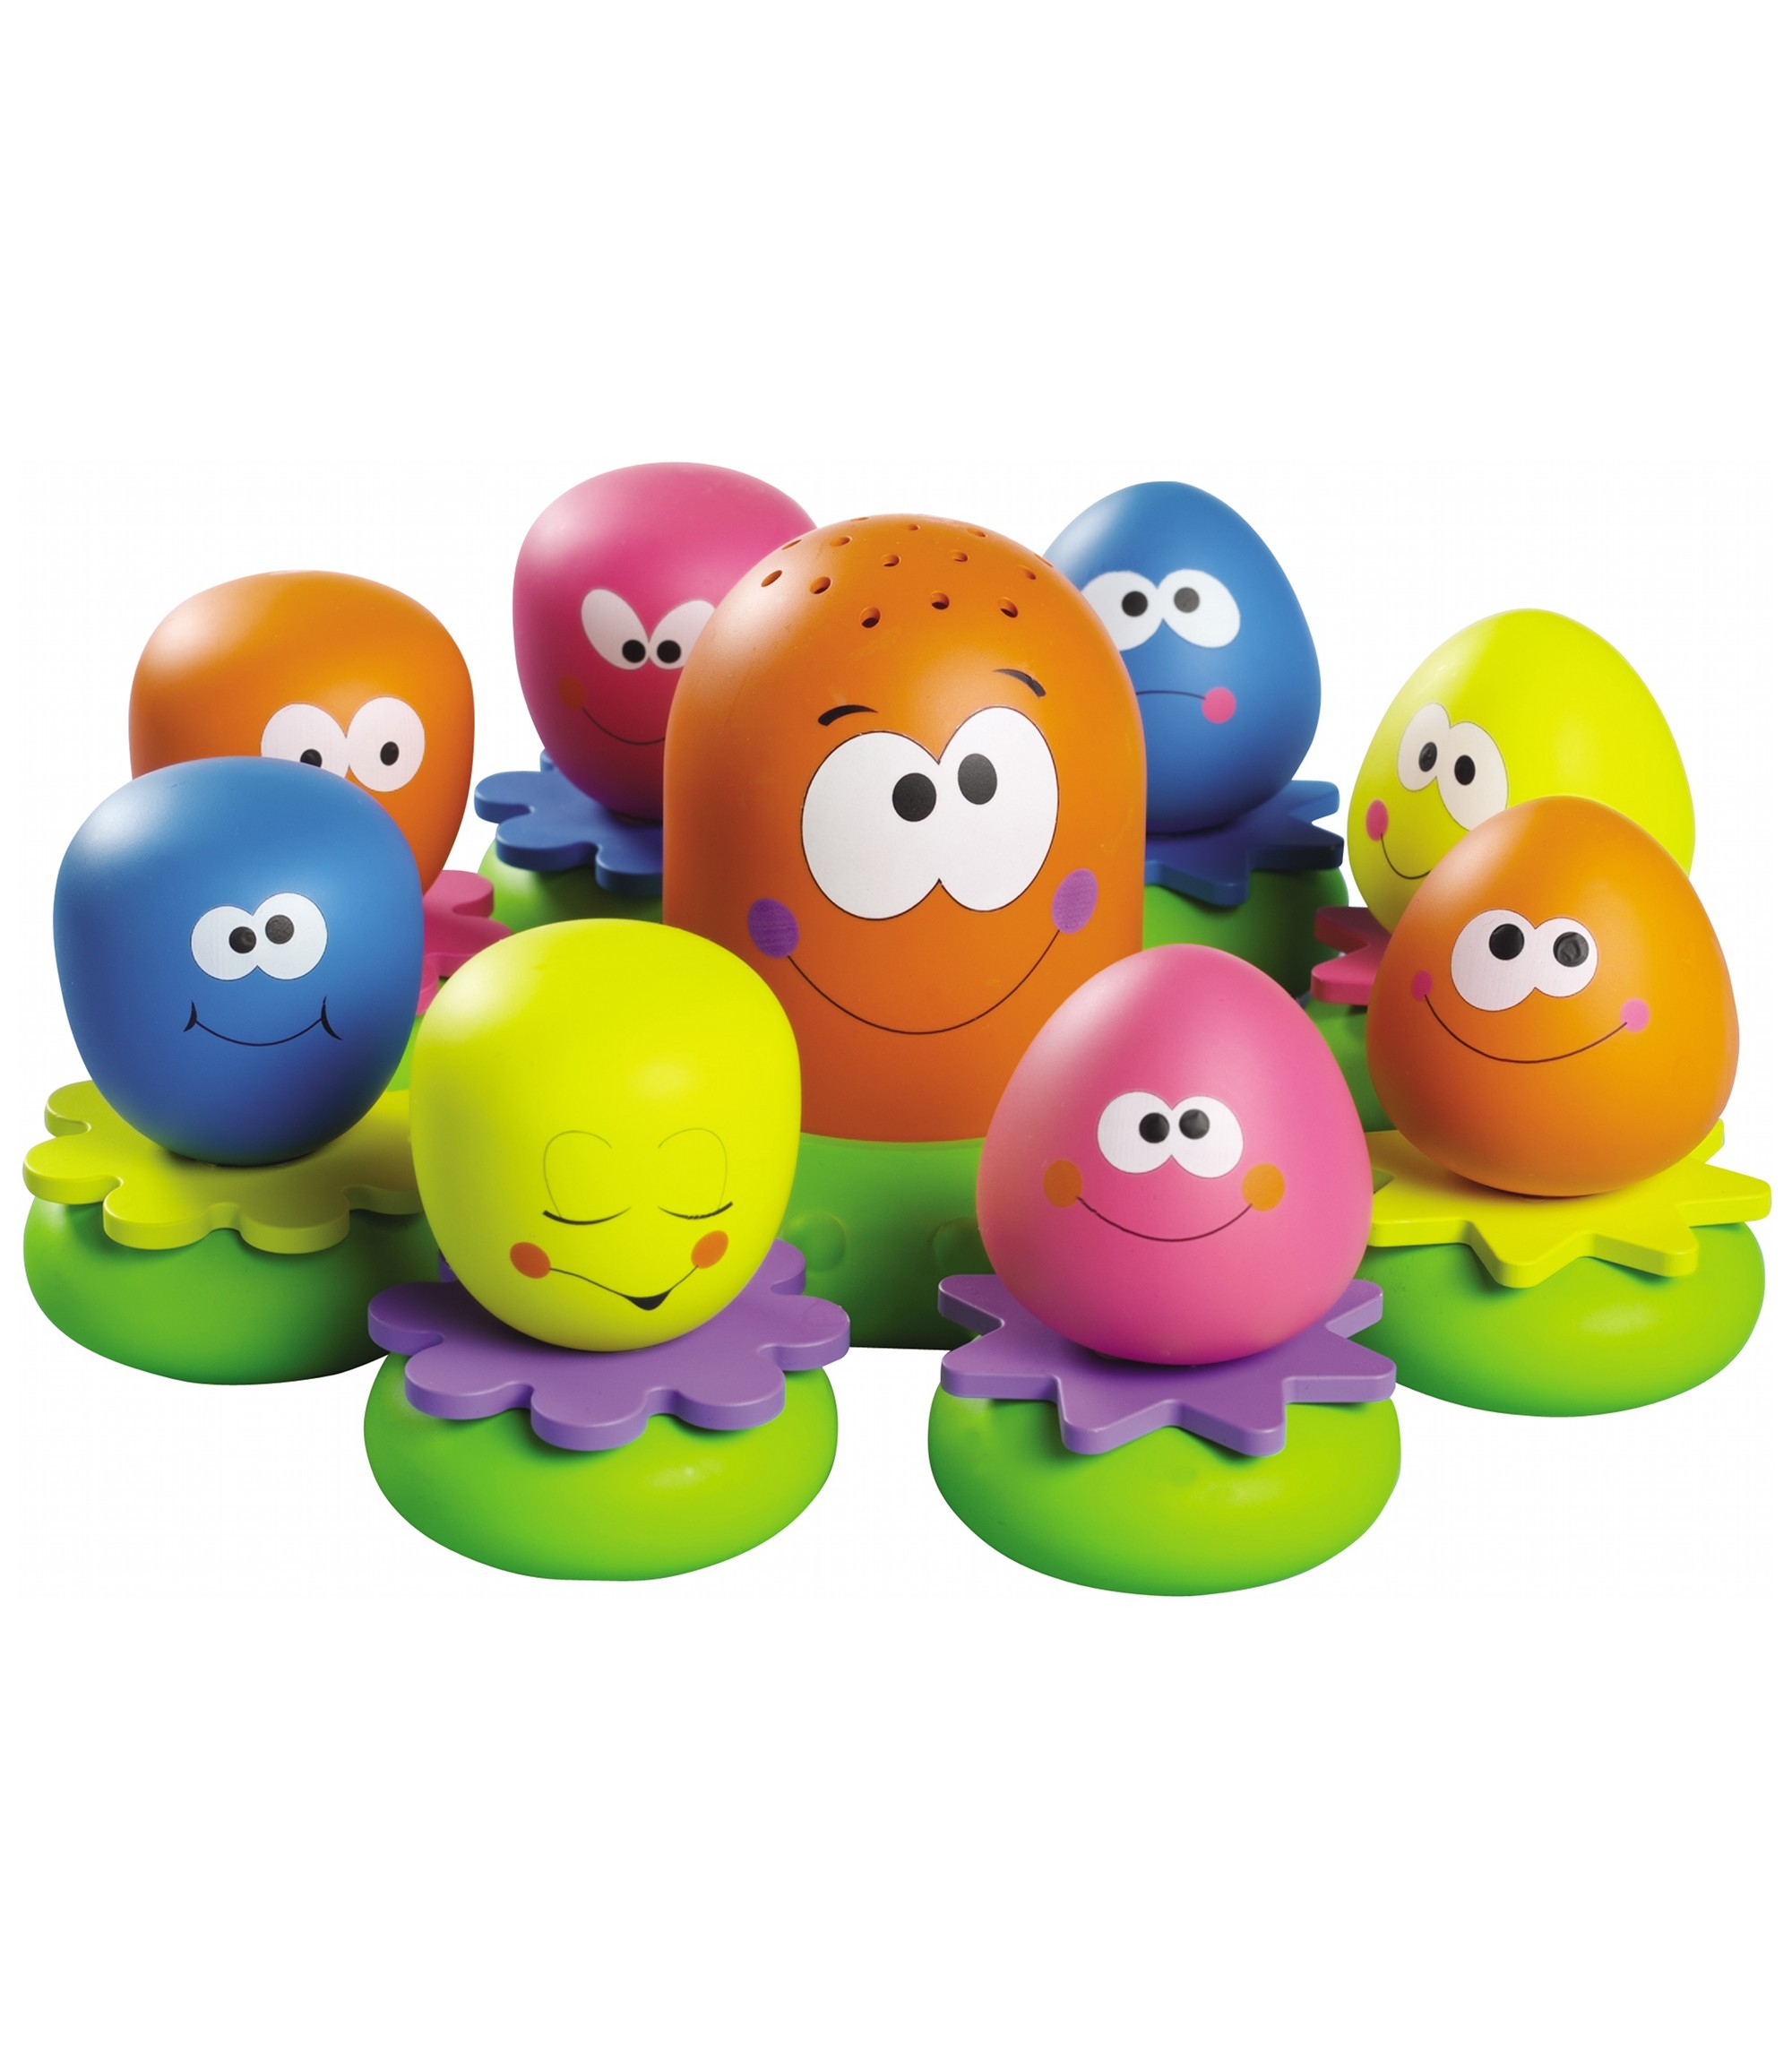 10 brinquedos ideais para uma criança de um ano - Família - SAPO Lifestyle